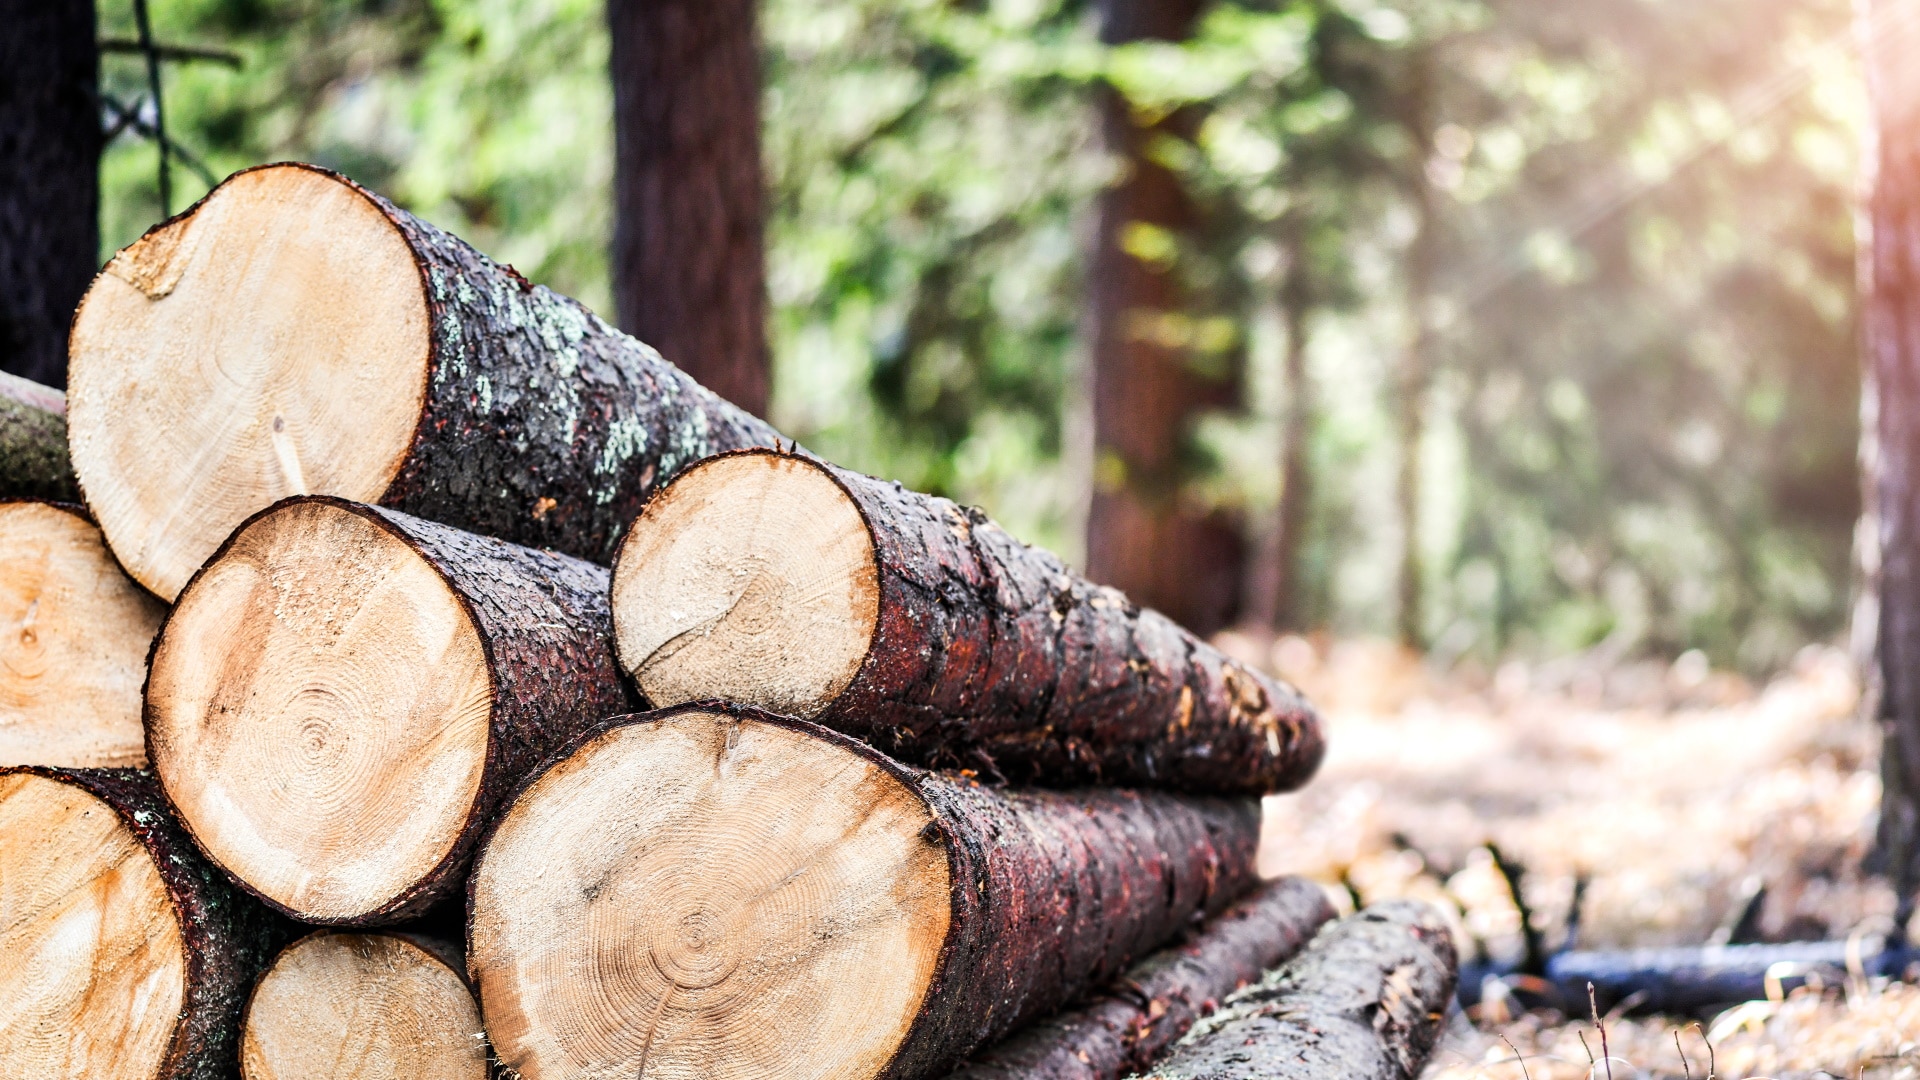 Umwelt Biomasse Brikett presse Holz hacks chnitzel Brikett